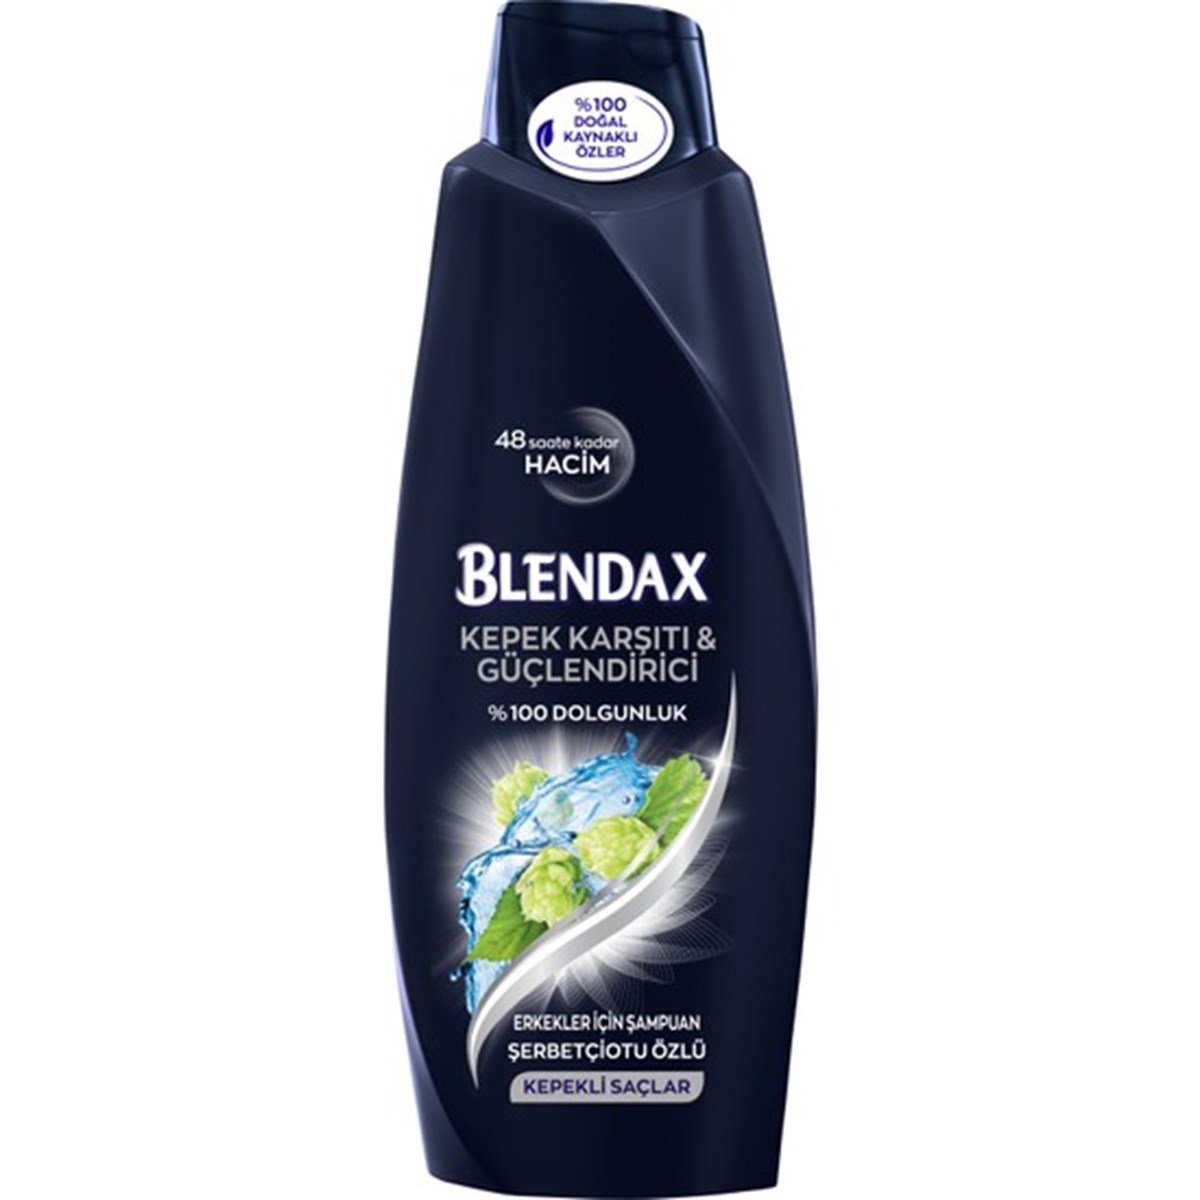 Blendax Kepeğe Karşı Etkili Şampuan 500ml Erkekler için